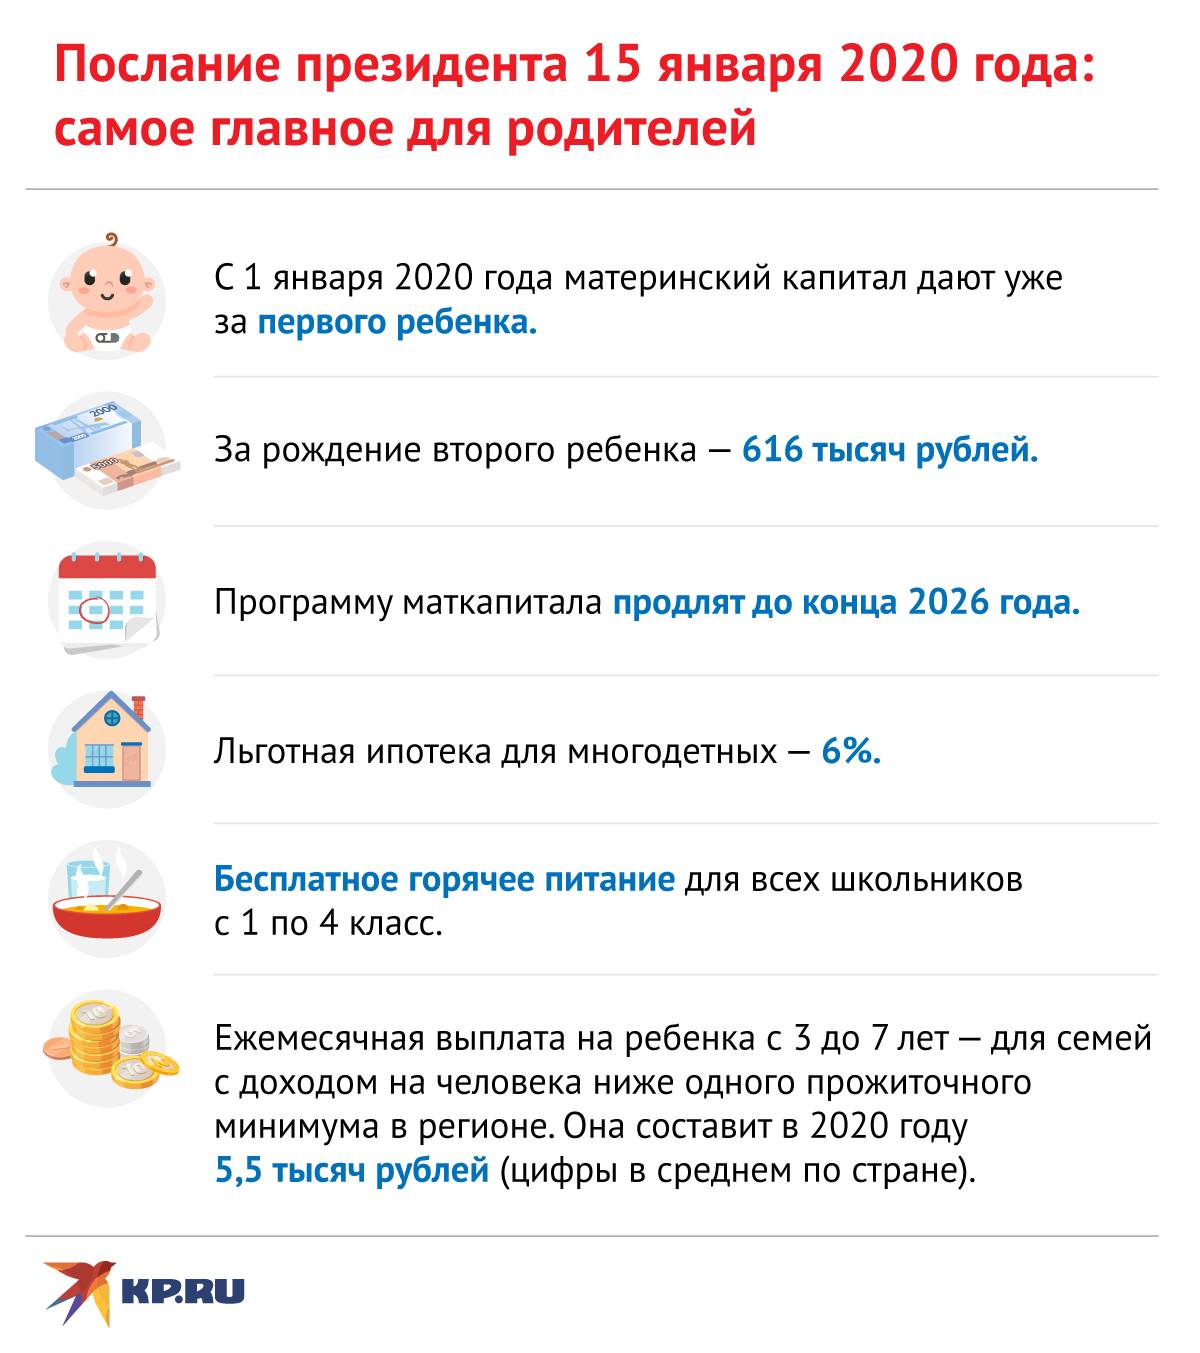 Материнский капитал в 2020 году за 1-го и 2-го ребенка в россии: сколько составит и последние новости об изменениях